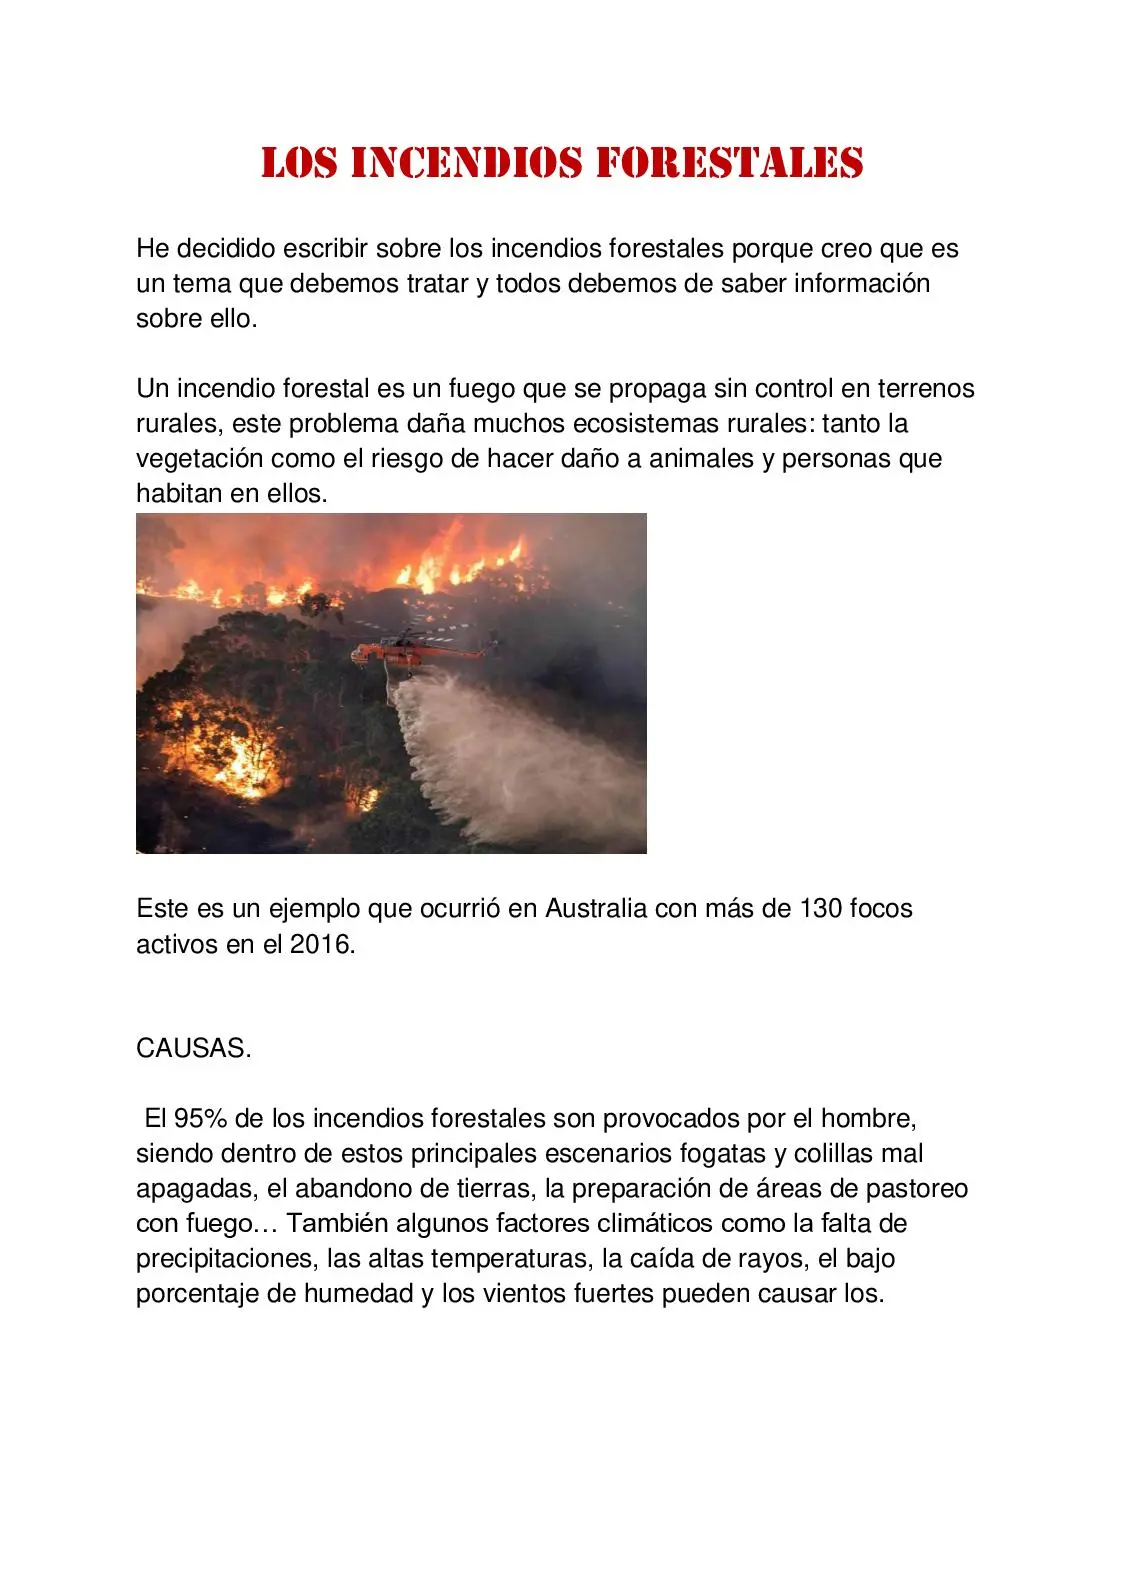 resumen de los incendios forestales - Cuál es la causa de un incendio forestal